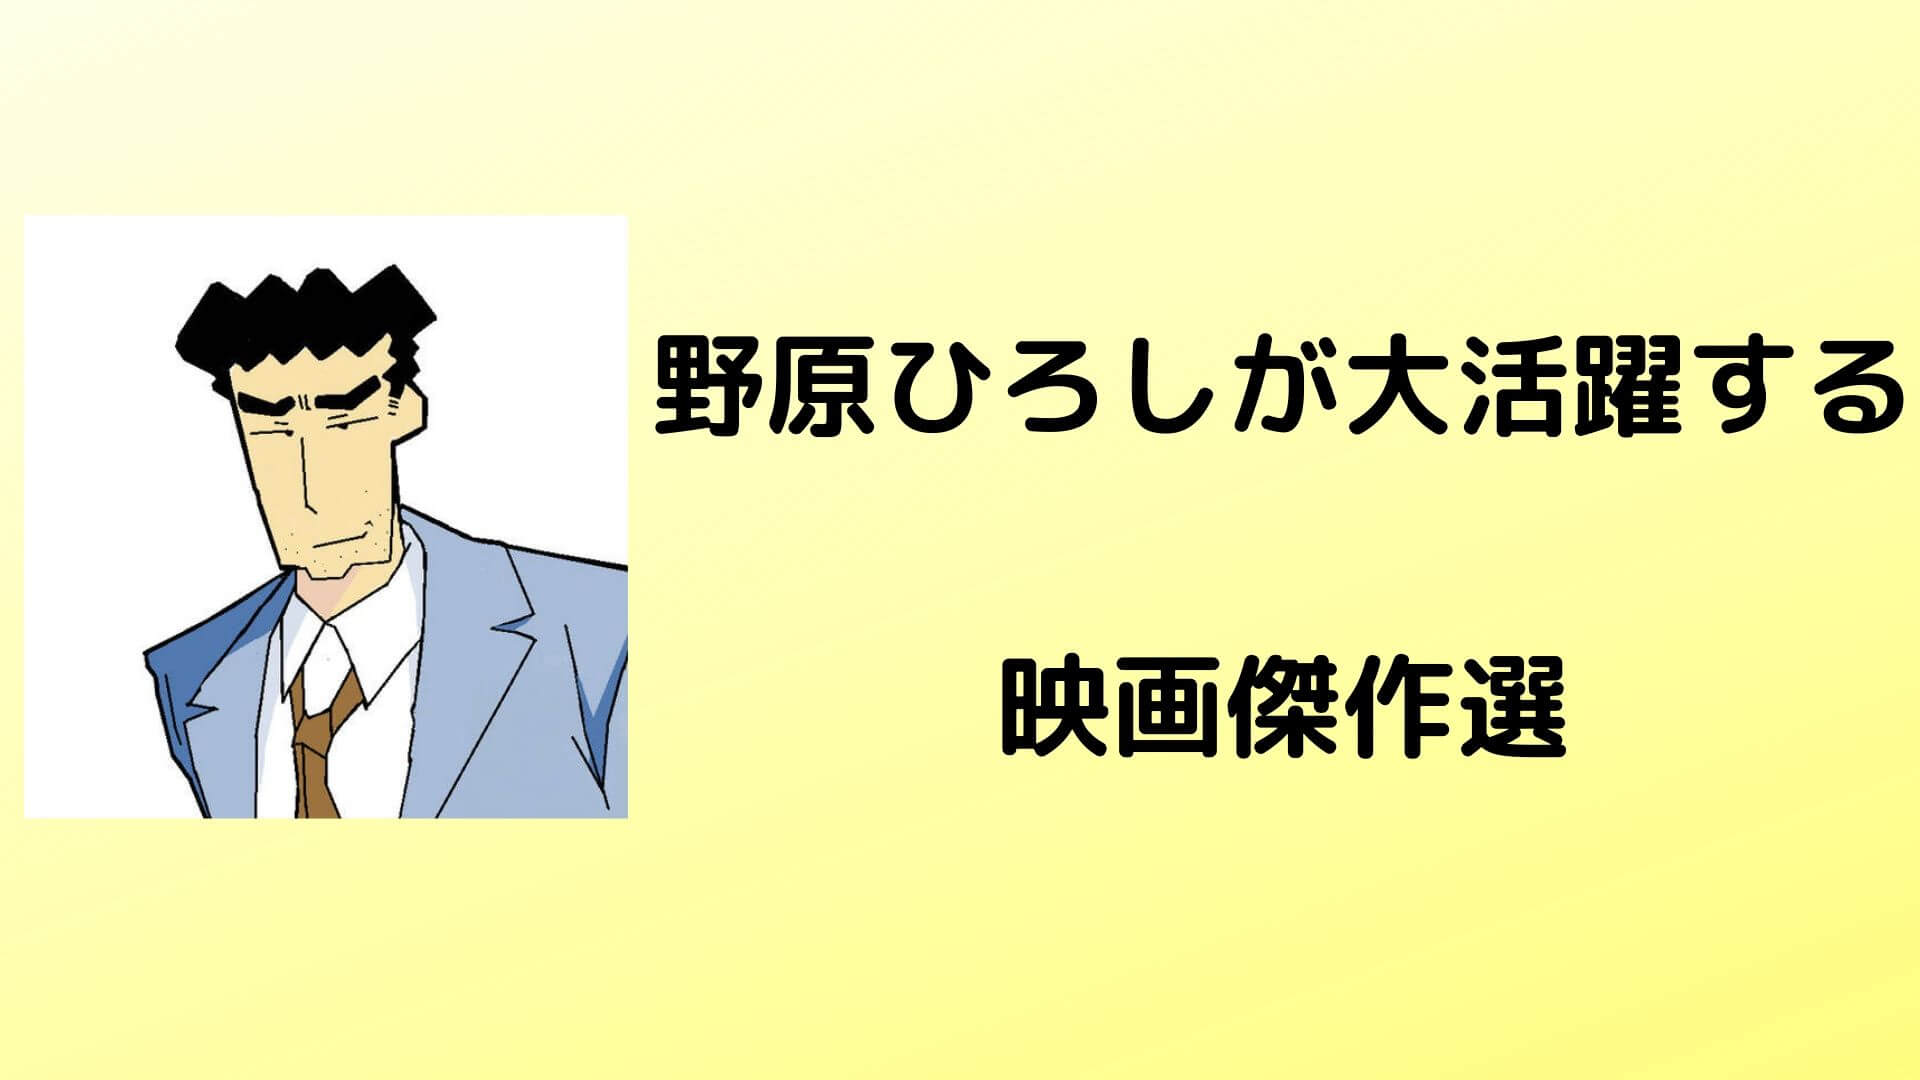 野原ひろしが活躍する映画3選 クレヨンしんちゃんを無料で見るには kenパパブログ